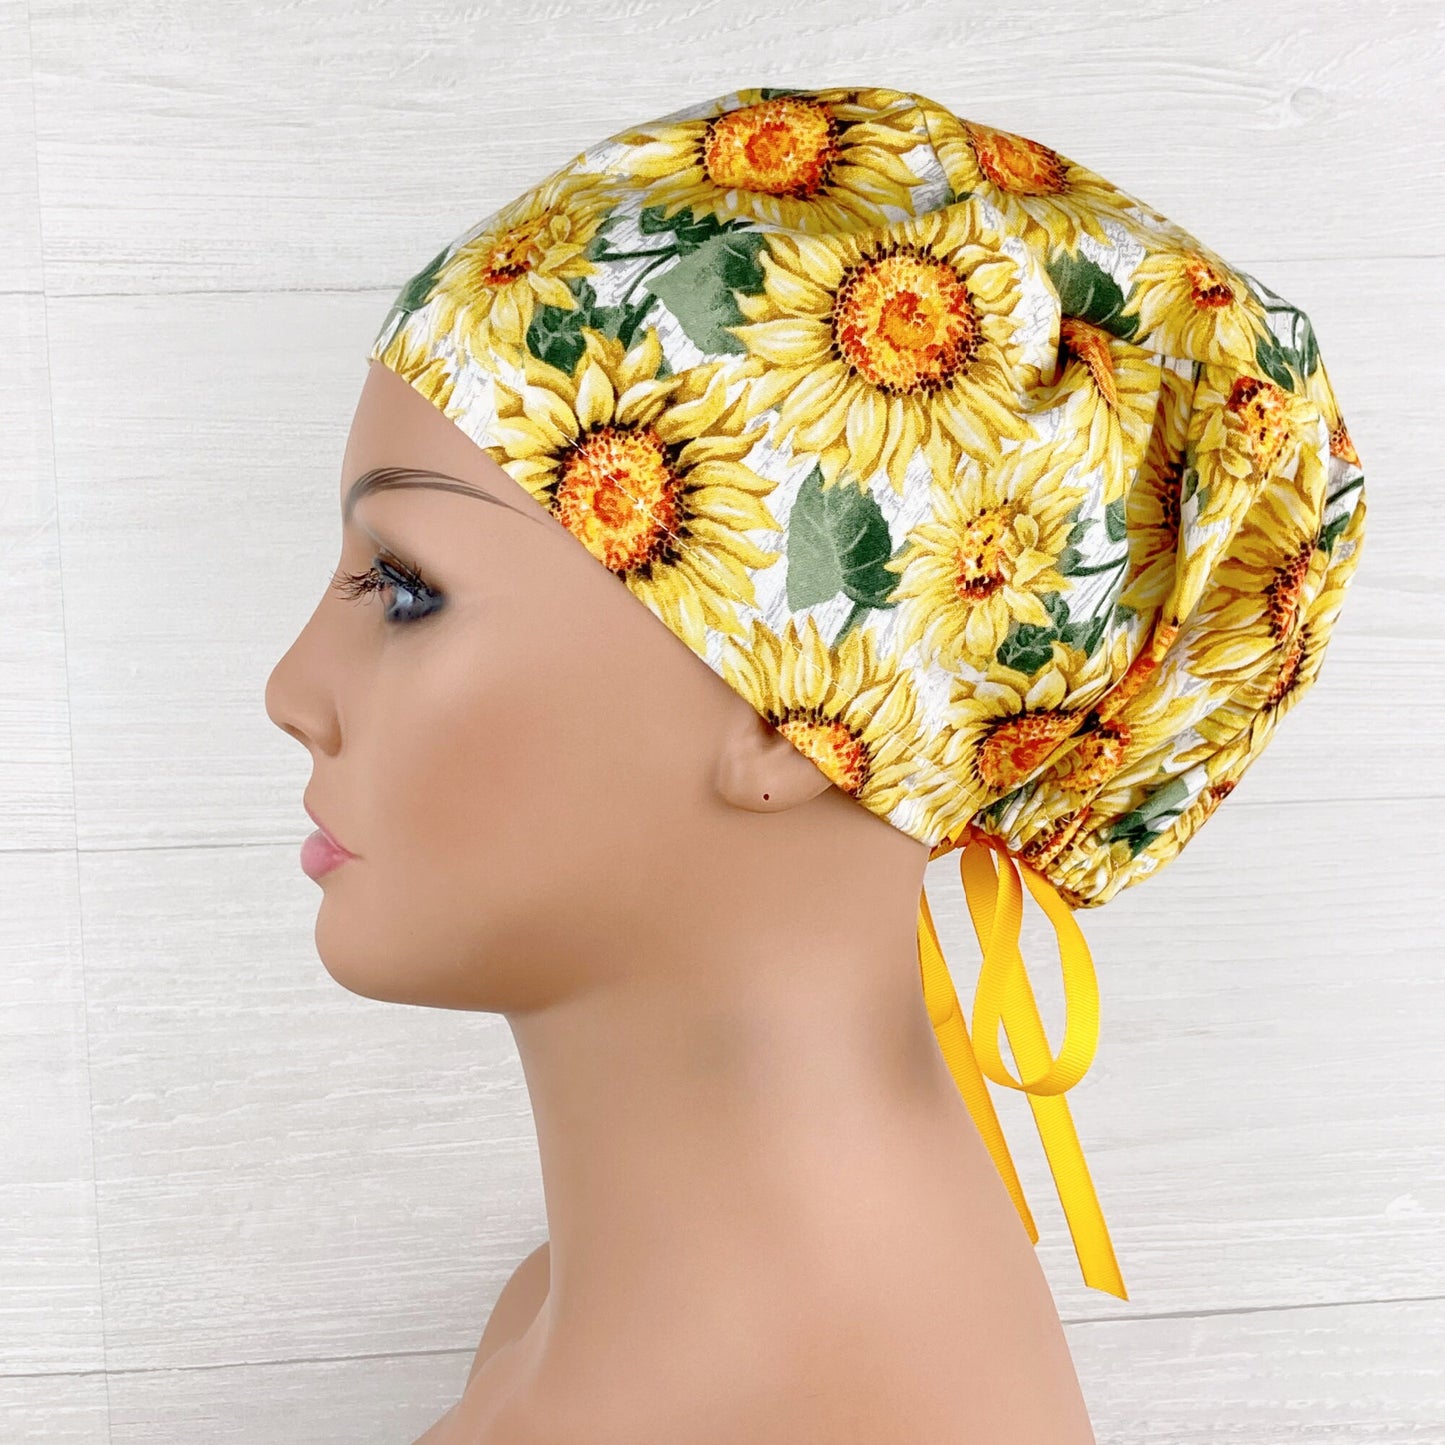 Handmade Surgical Scrub Cap - Scrub Hat - Women's Tieback - Sunflowers Women's Tieback Hat